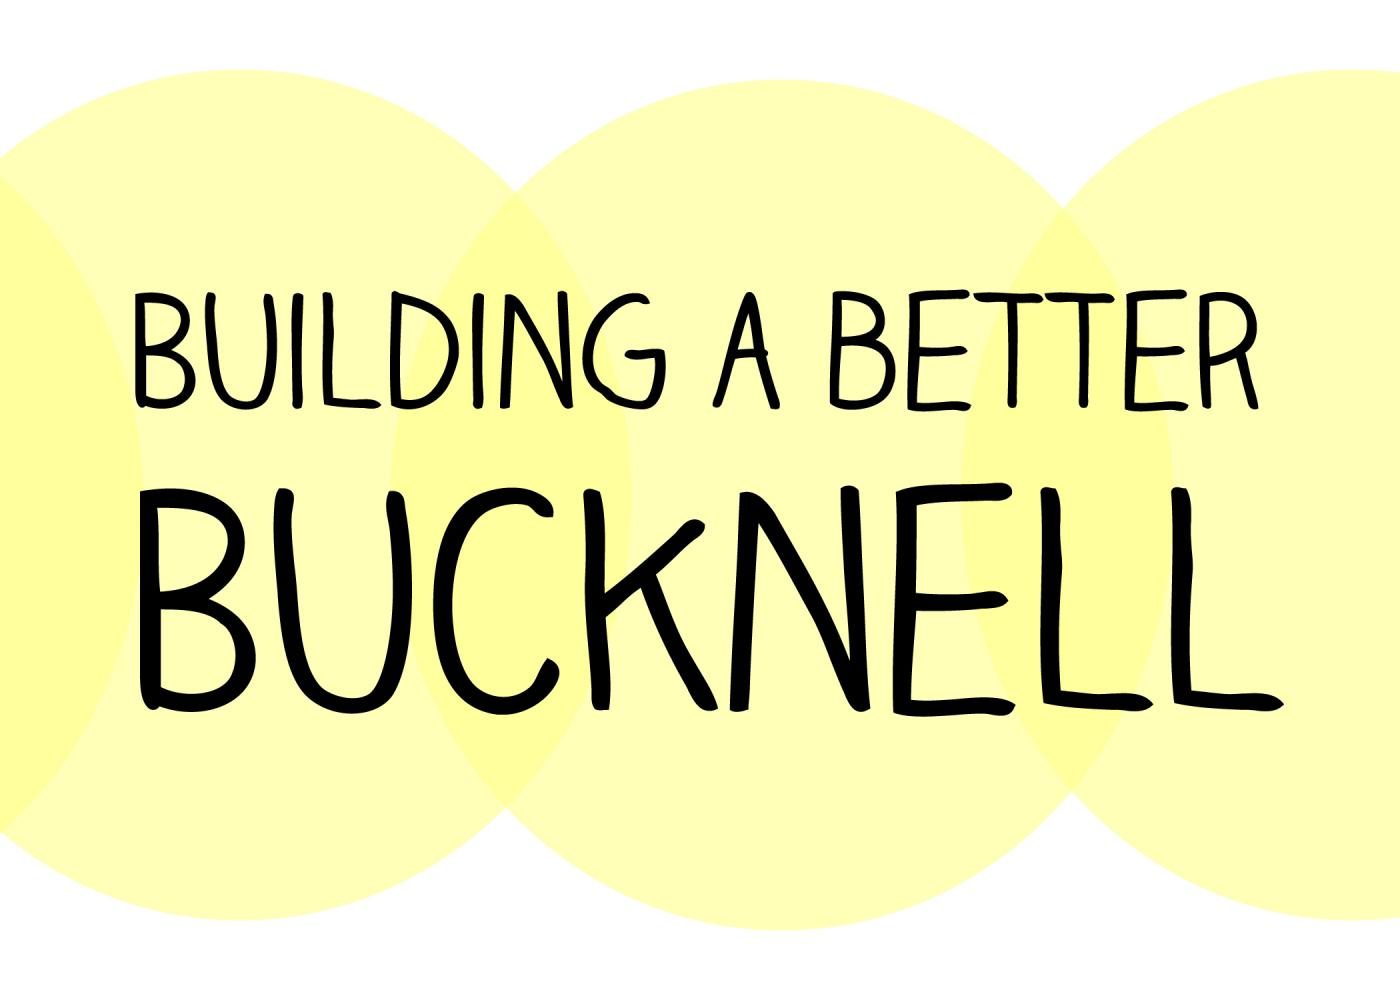 Building a better Bucknell